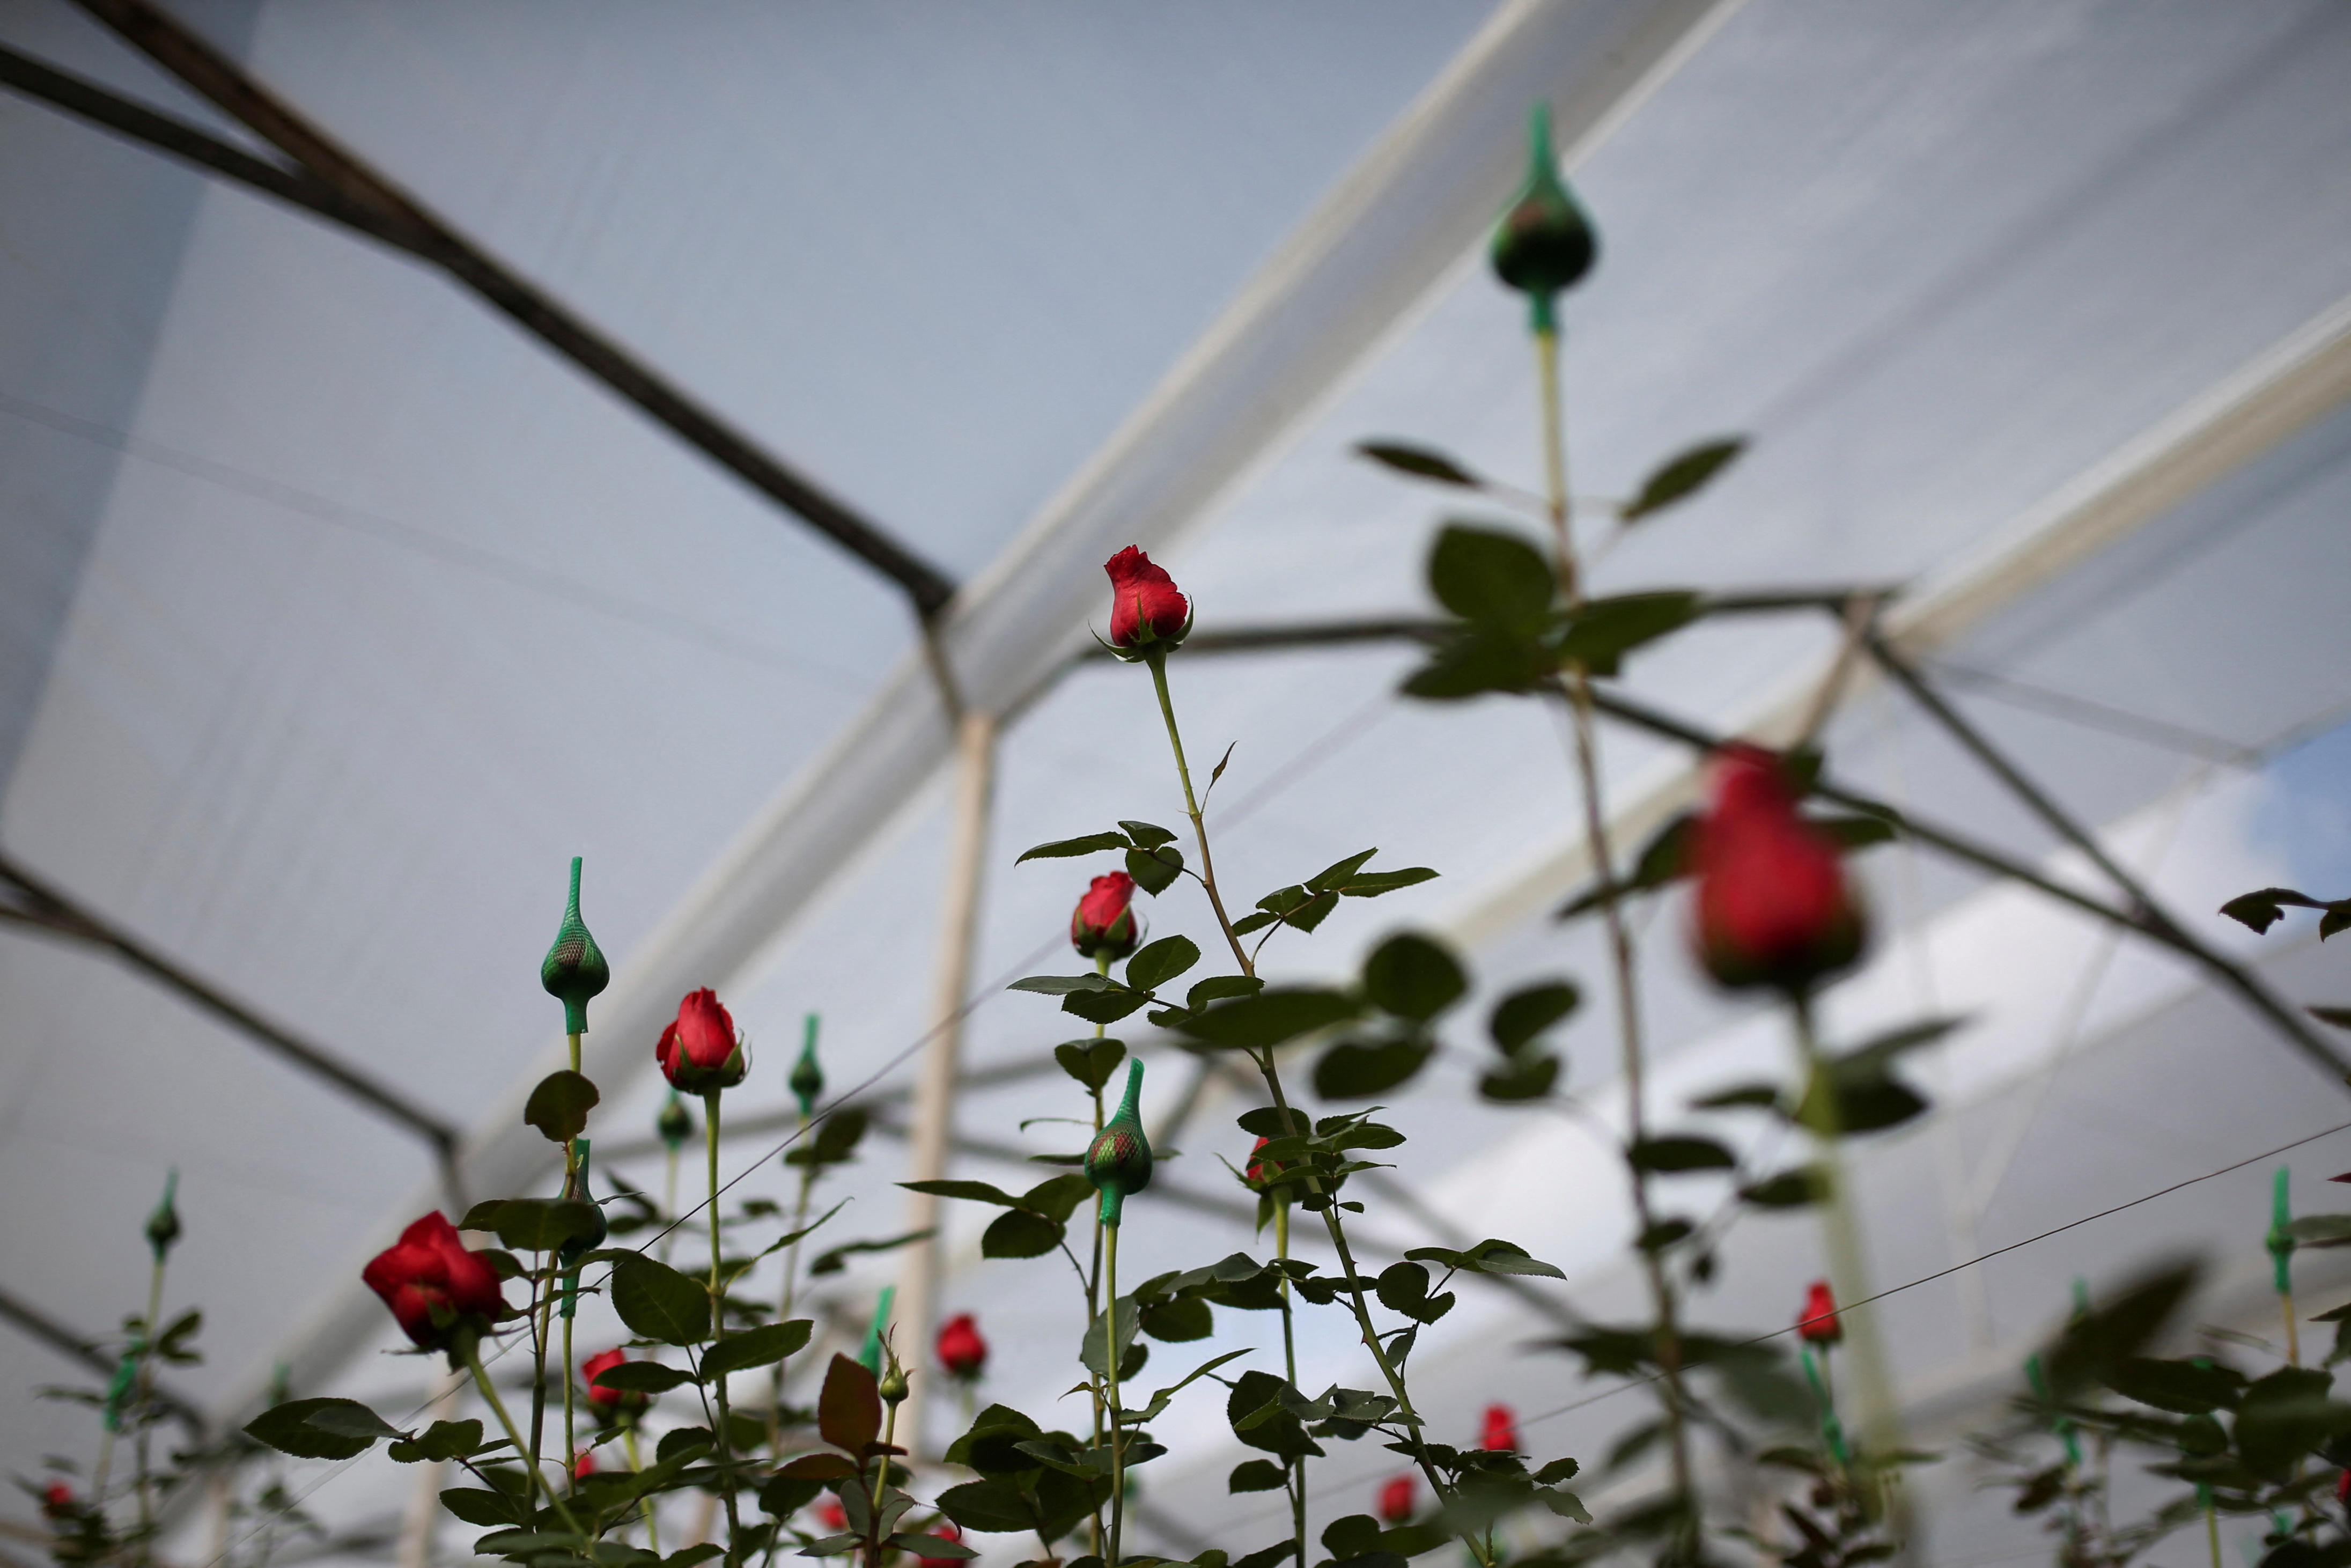 Las rosas son un regalo típico de la temporada (Foto: REUTERS/Luisa Gonzalez)